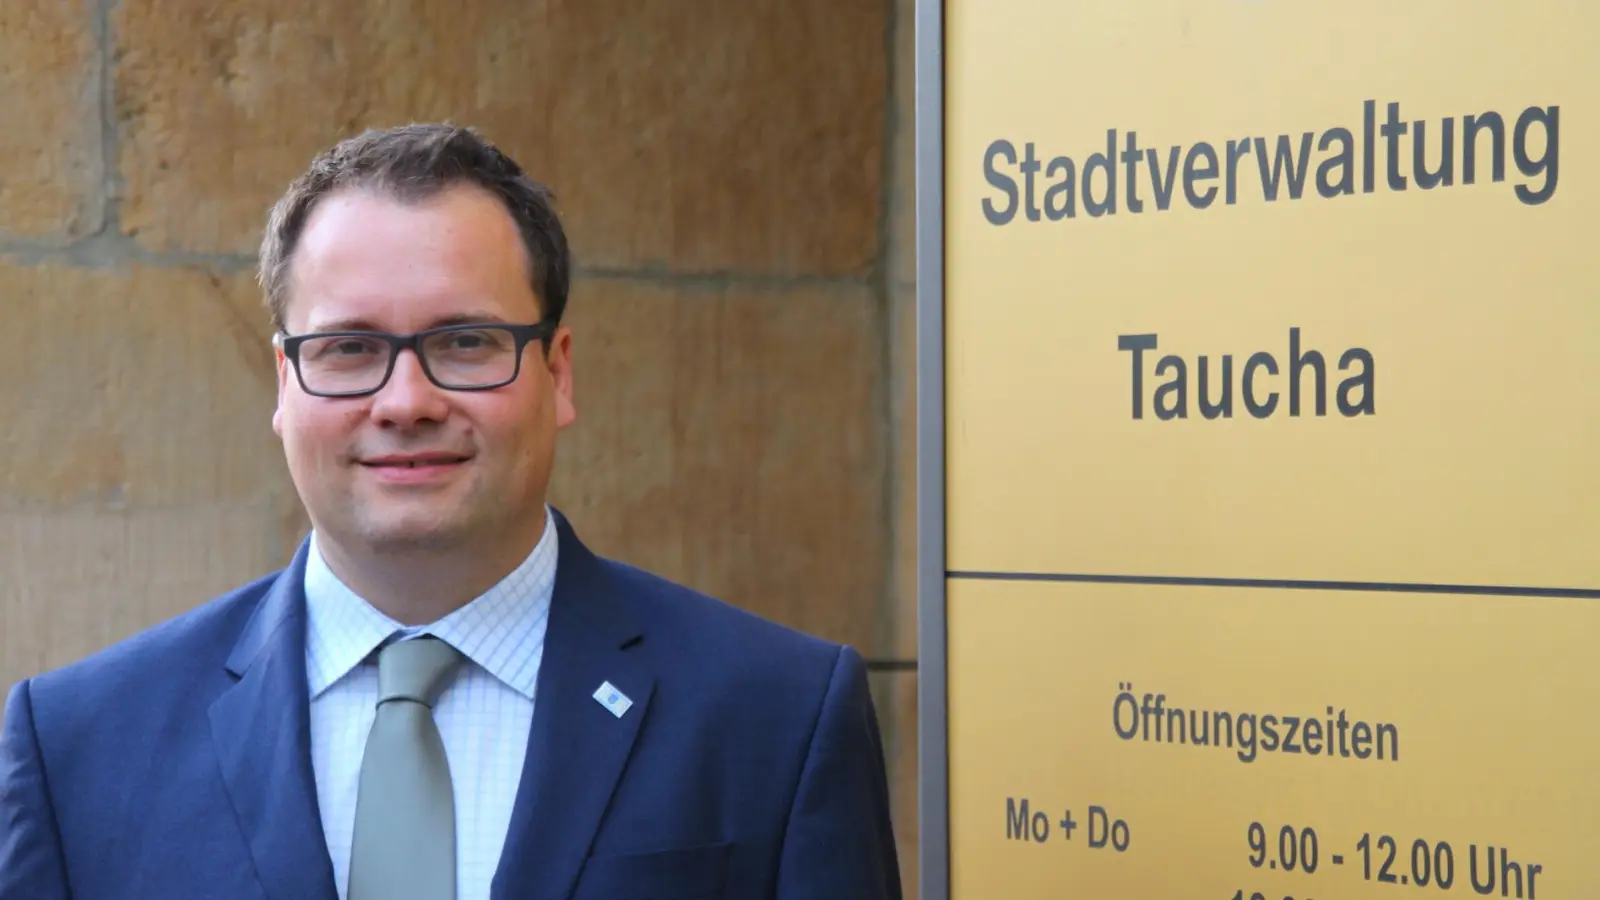 Tauchas Bürgermeister ist nun auch Standesbeamter (Foto: taucha-kompakt.de)